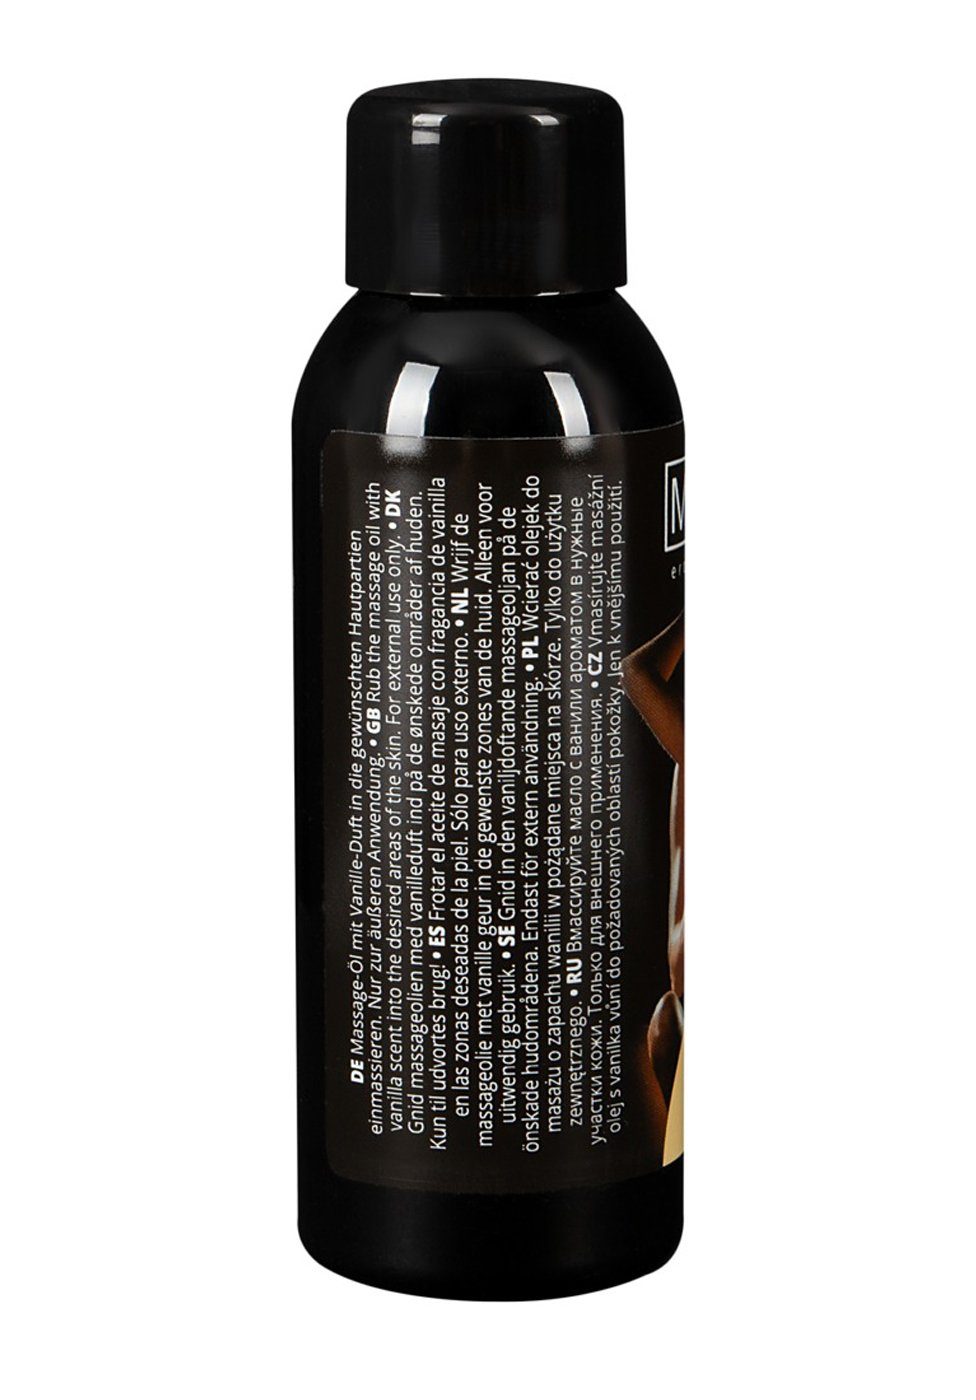 50 Massage-Öl - Magoon Vanille Erotik Massageöl ml